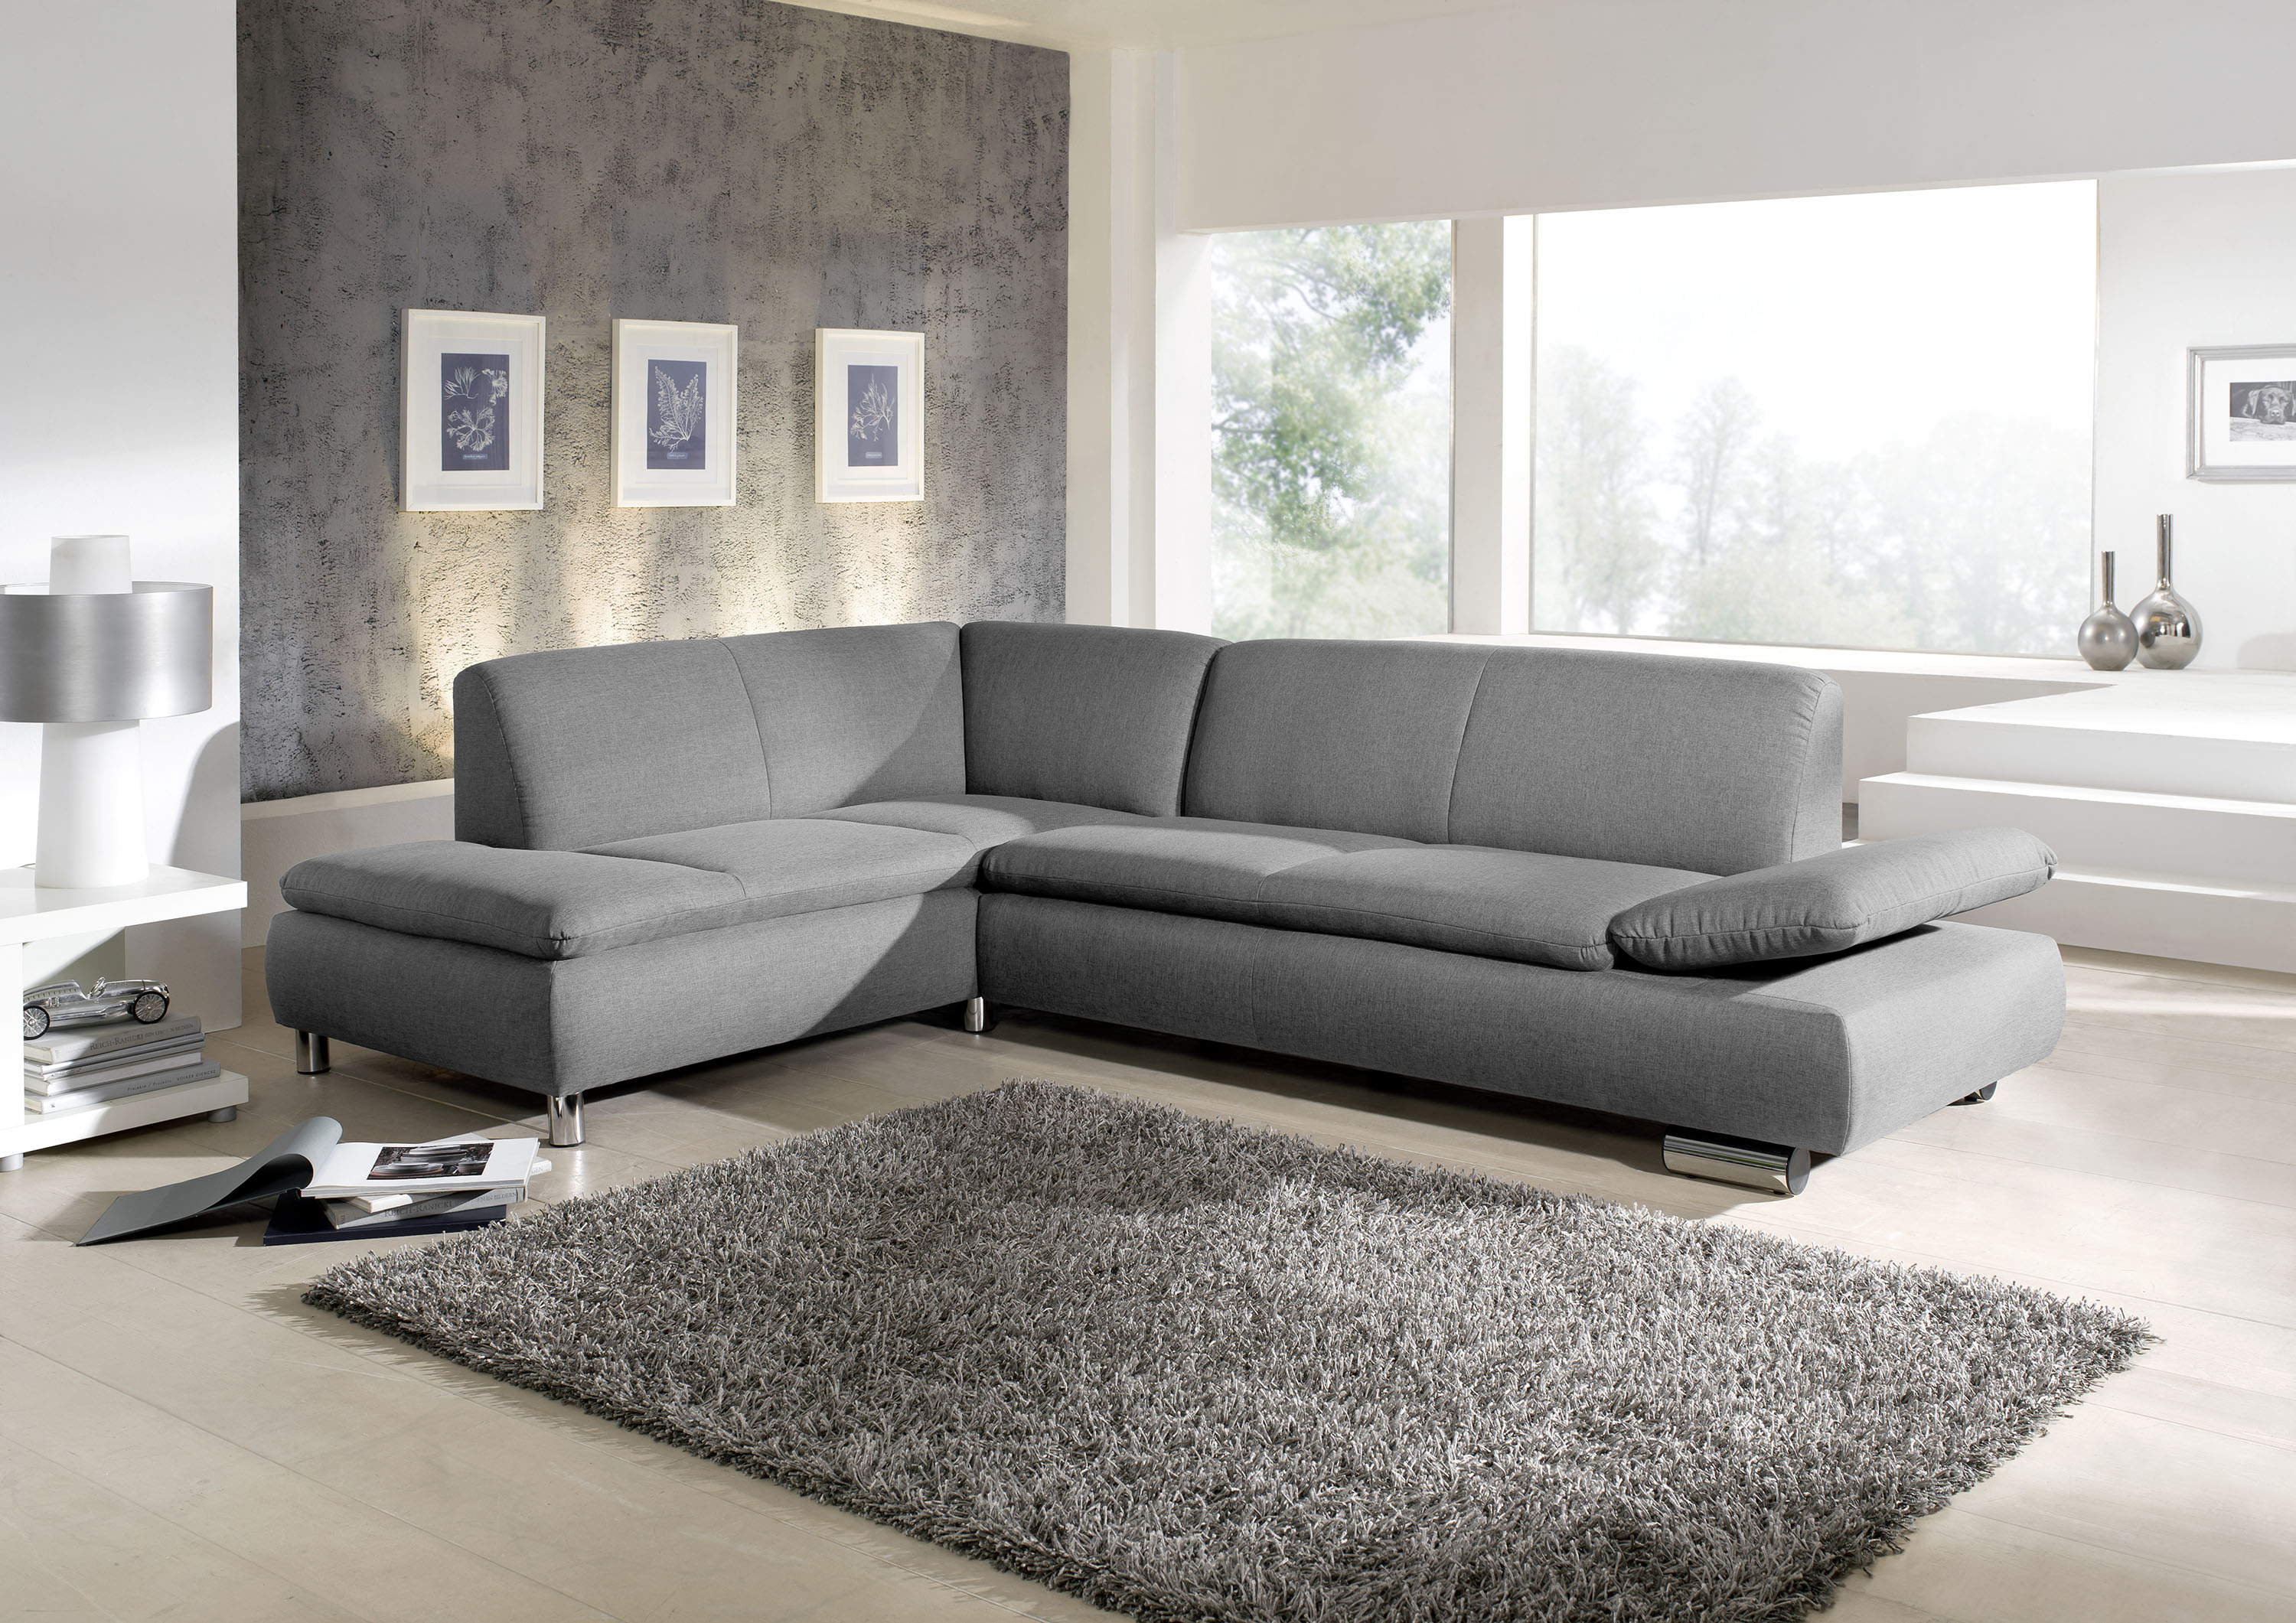 graues ecksofa mit hochgeklappter armlehne und verchromten metallfüssen in einem hellen wohnzimmer mit grauen teppich